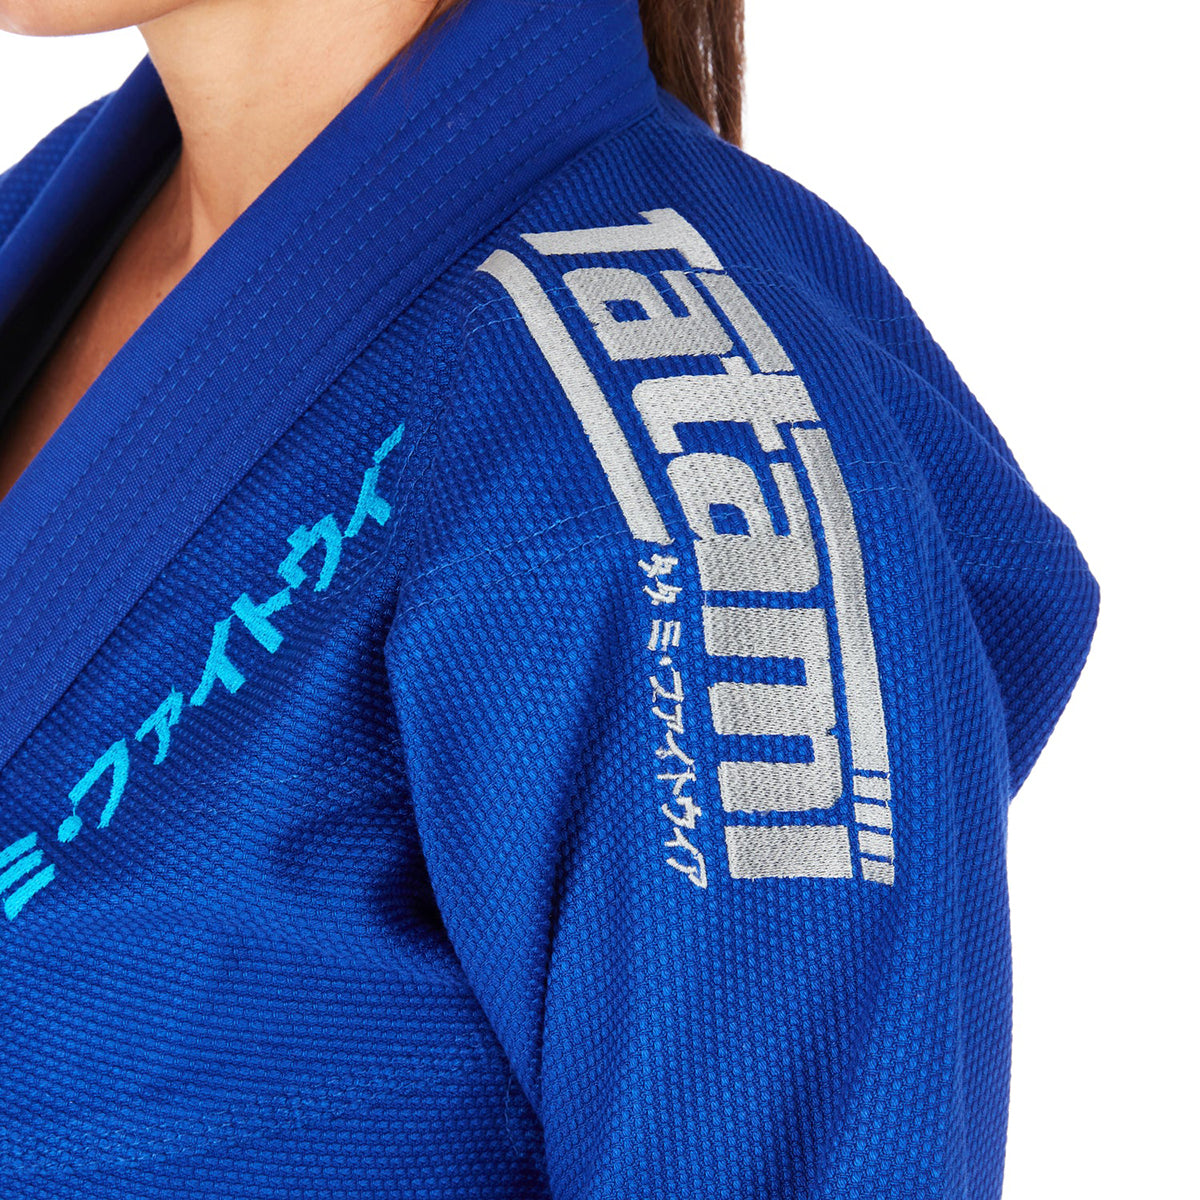 Tatami Fightwear Women's Estilo Black Label BJJ Gi - Gray/Blue Tatami Fightwear